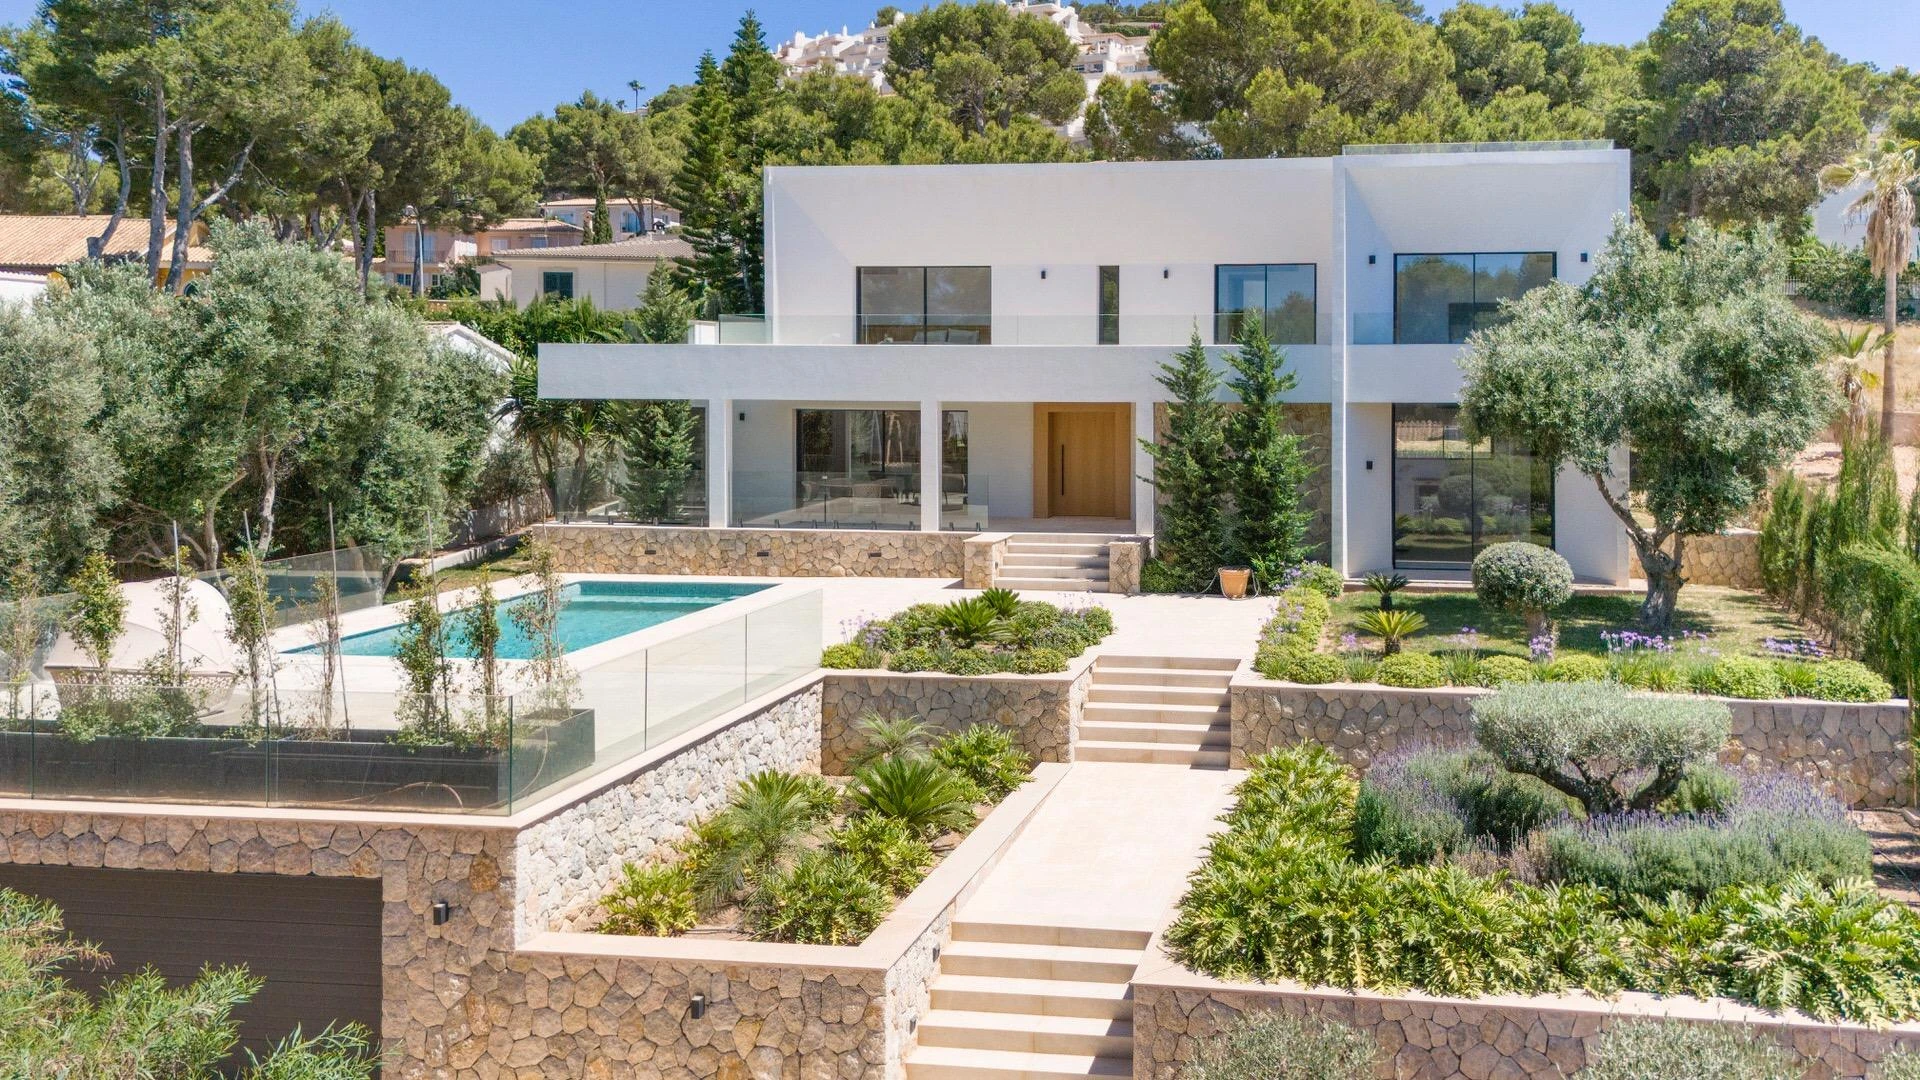 Excepcional villa contemporánea a estrenar en Santa Ponsa con jardín, piscina y cerca de playas